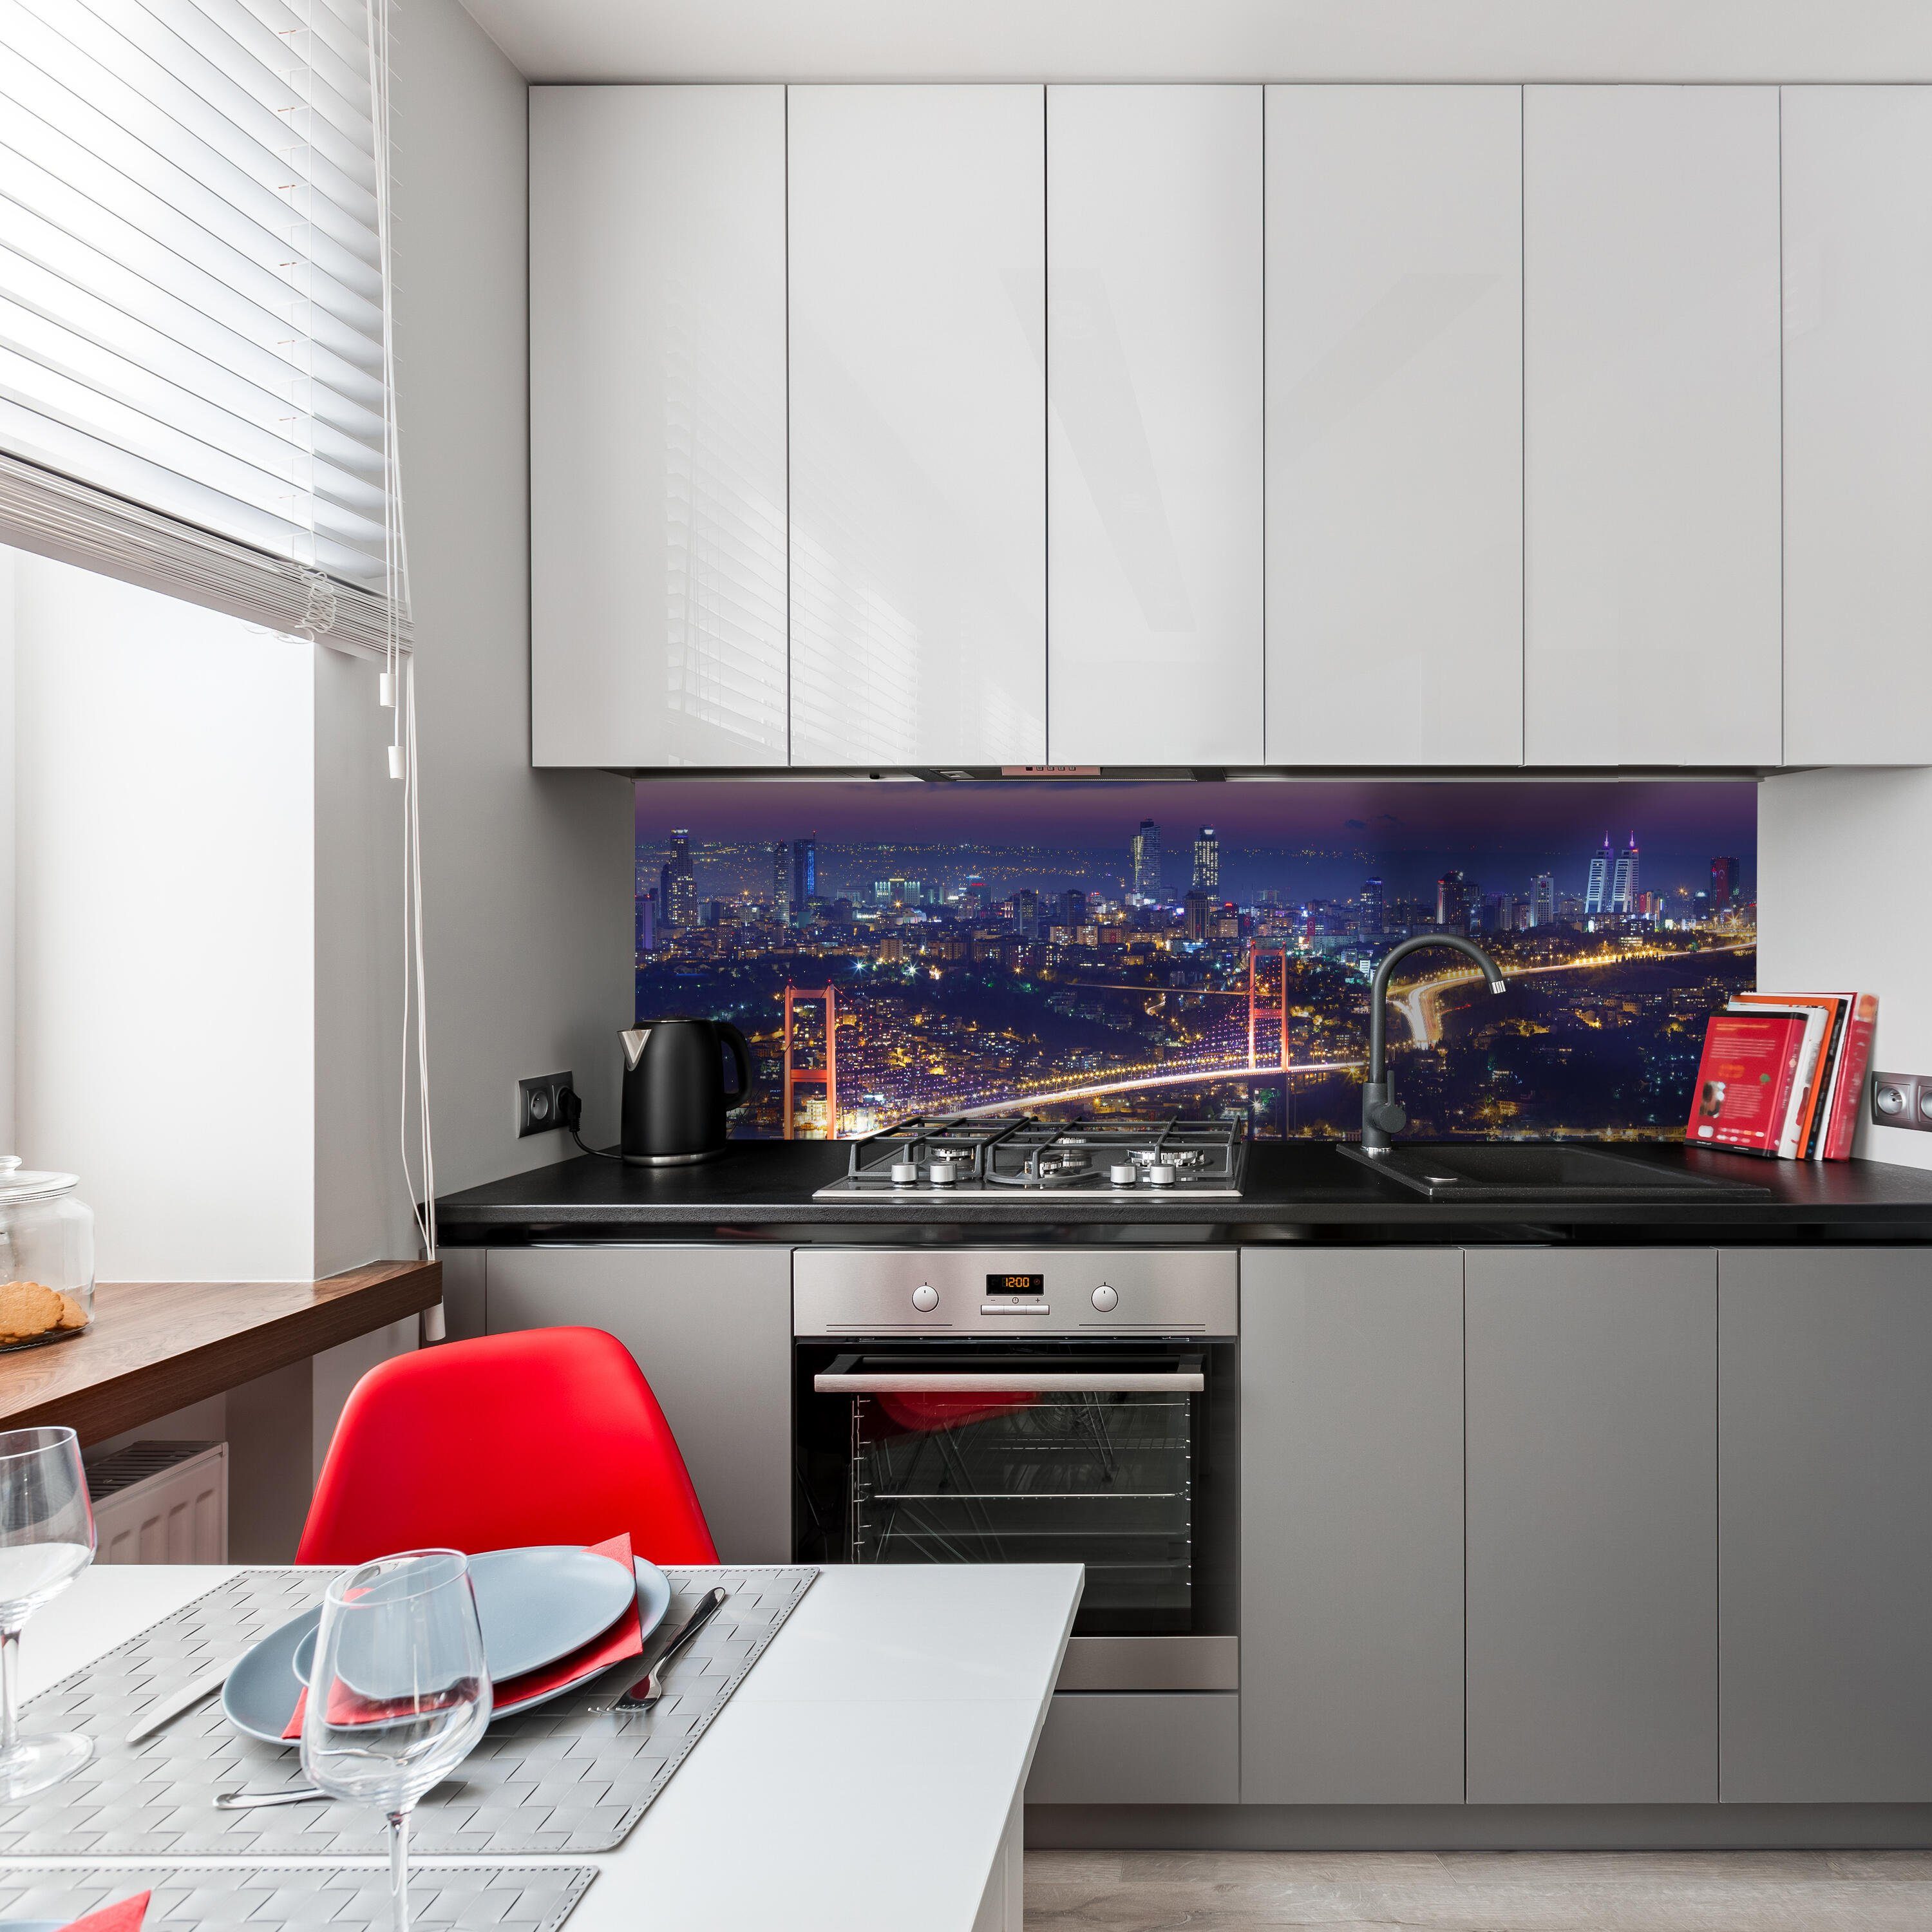 Nacht, wandmotiv24 Premium Istanbul Nischenrückwand bei versch. Größen Küchenrückwand in Hartschaum (1-tlg),